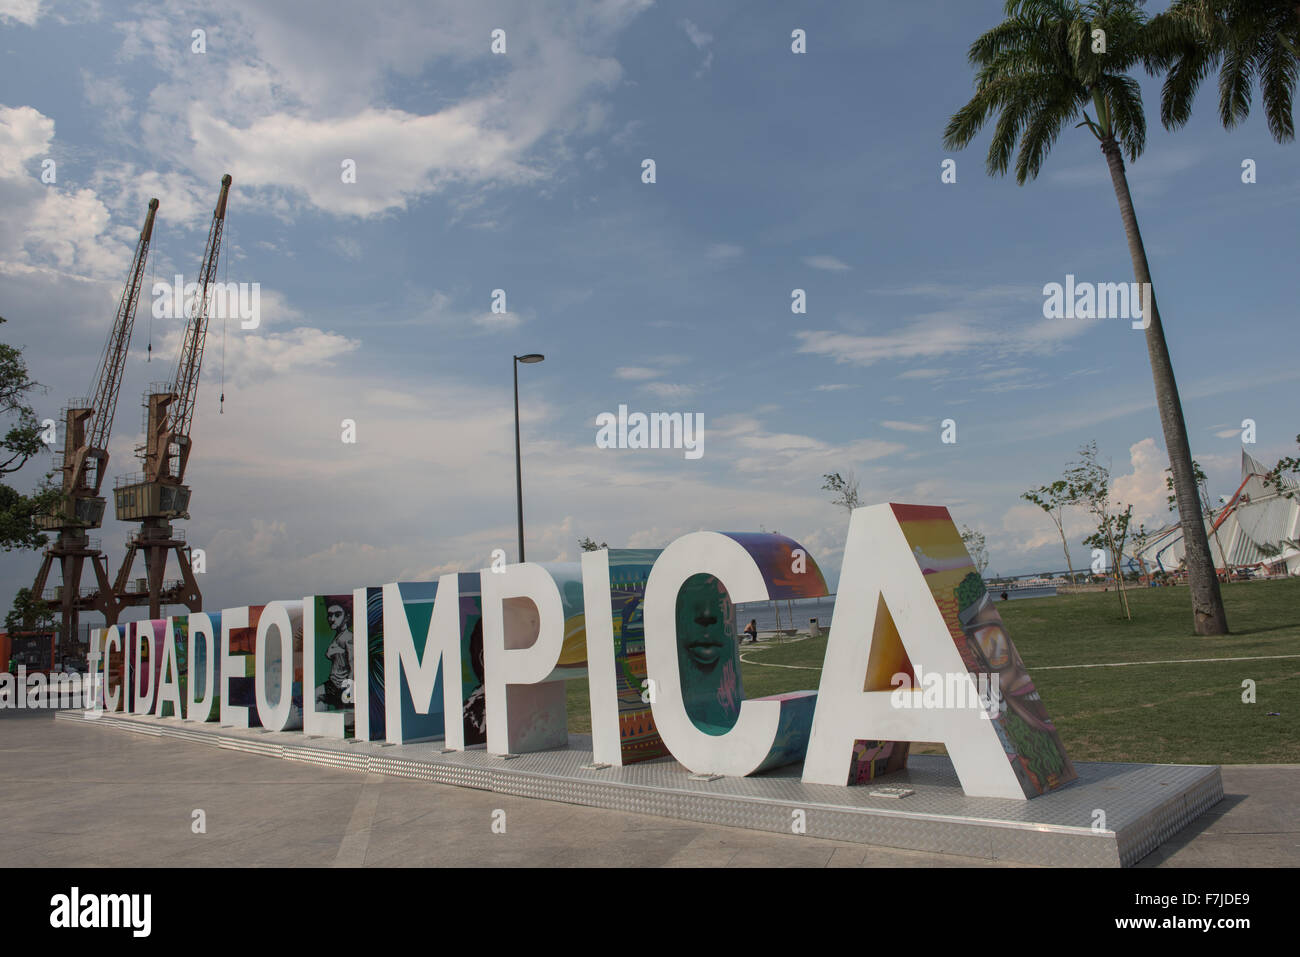 Vista della Praça Mauá con #CIDADEOLIMPICA segno prominente con dock in disuso gru, lasciato come parte della rigenerazione urbana programma. Giochi Olimpici di Rio de Janeiro, Brasile, 2016. Foto Stock